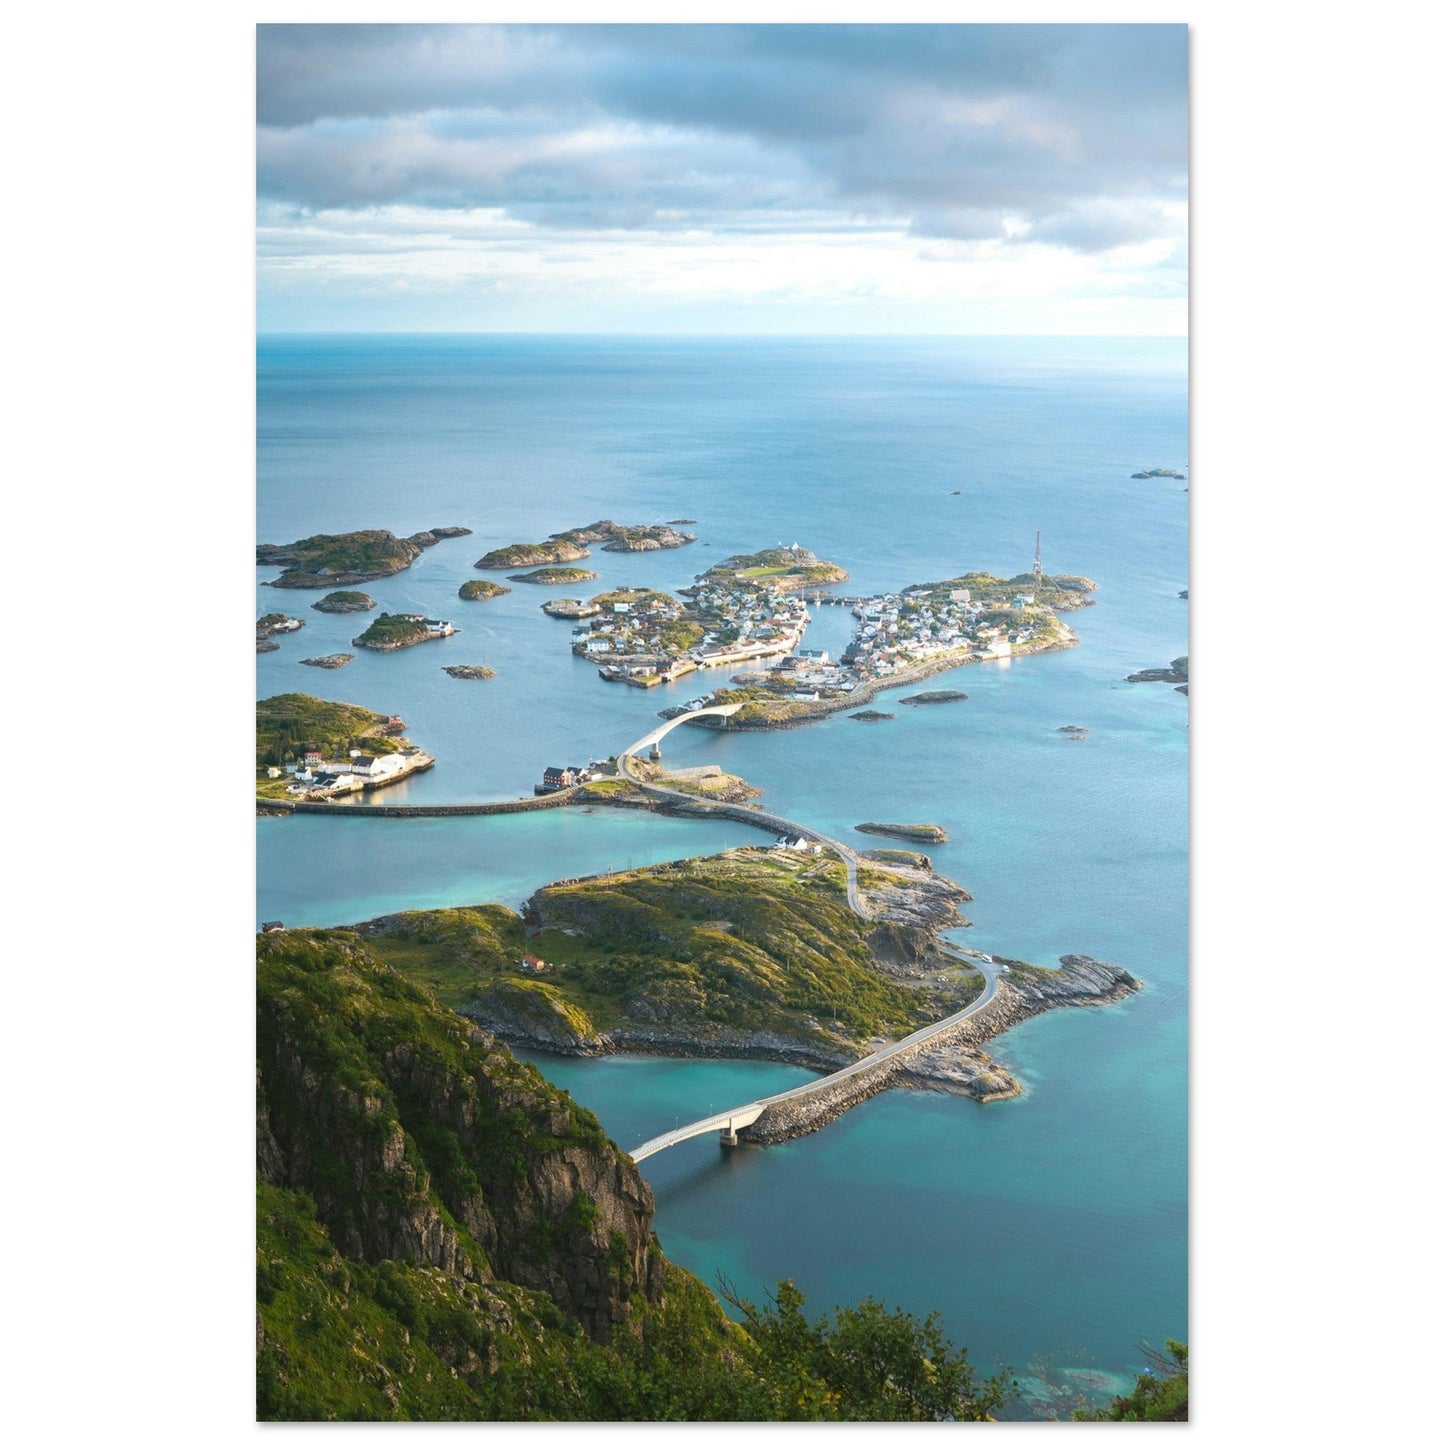 Vente Photo drone des Îles Lofoten, Norvège #1 - Tableau photo paysage